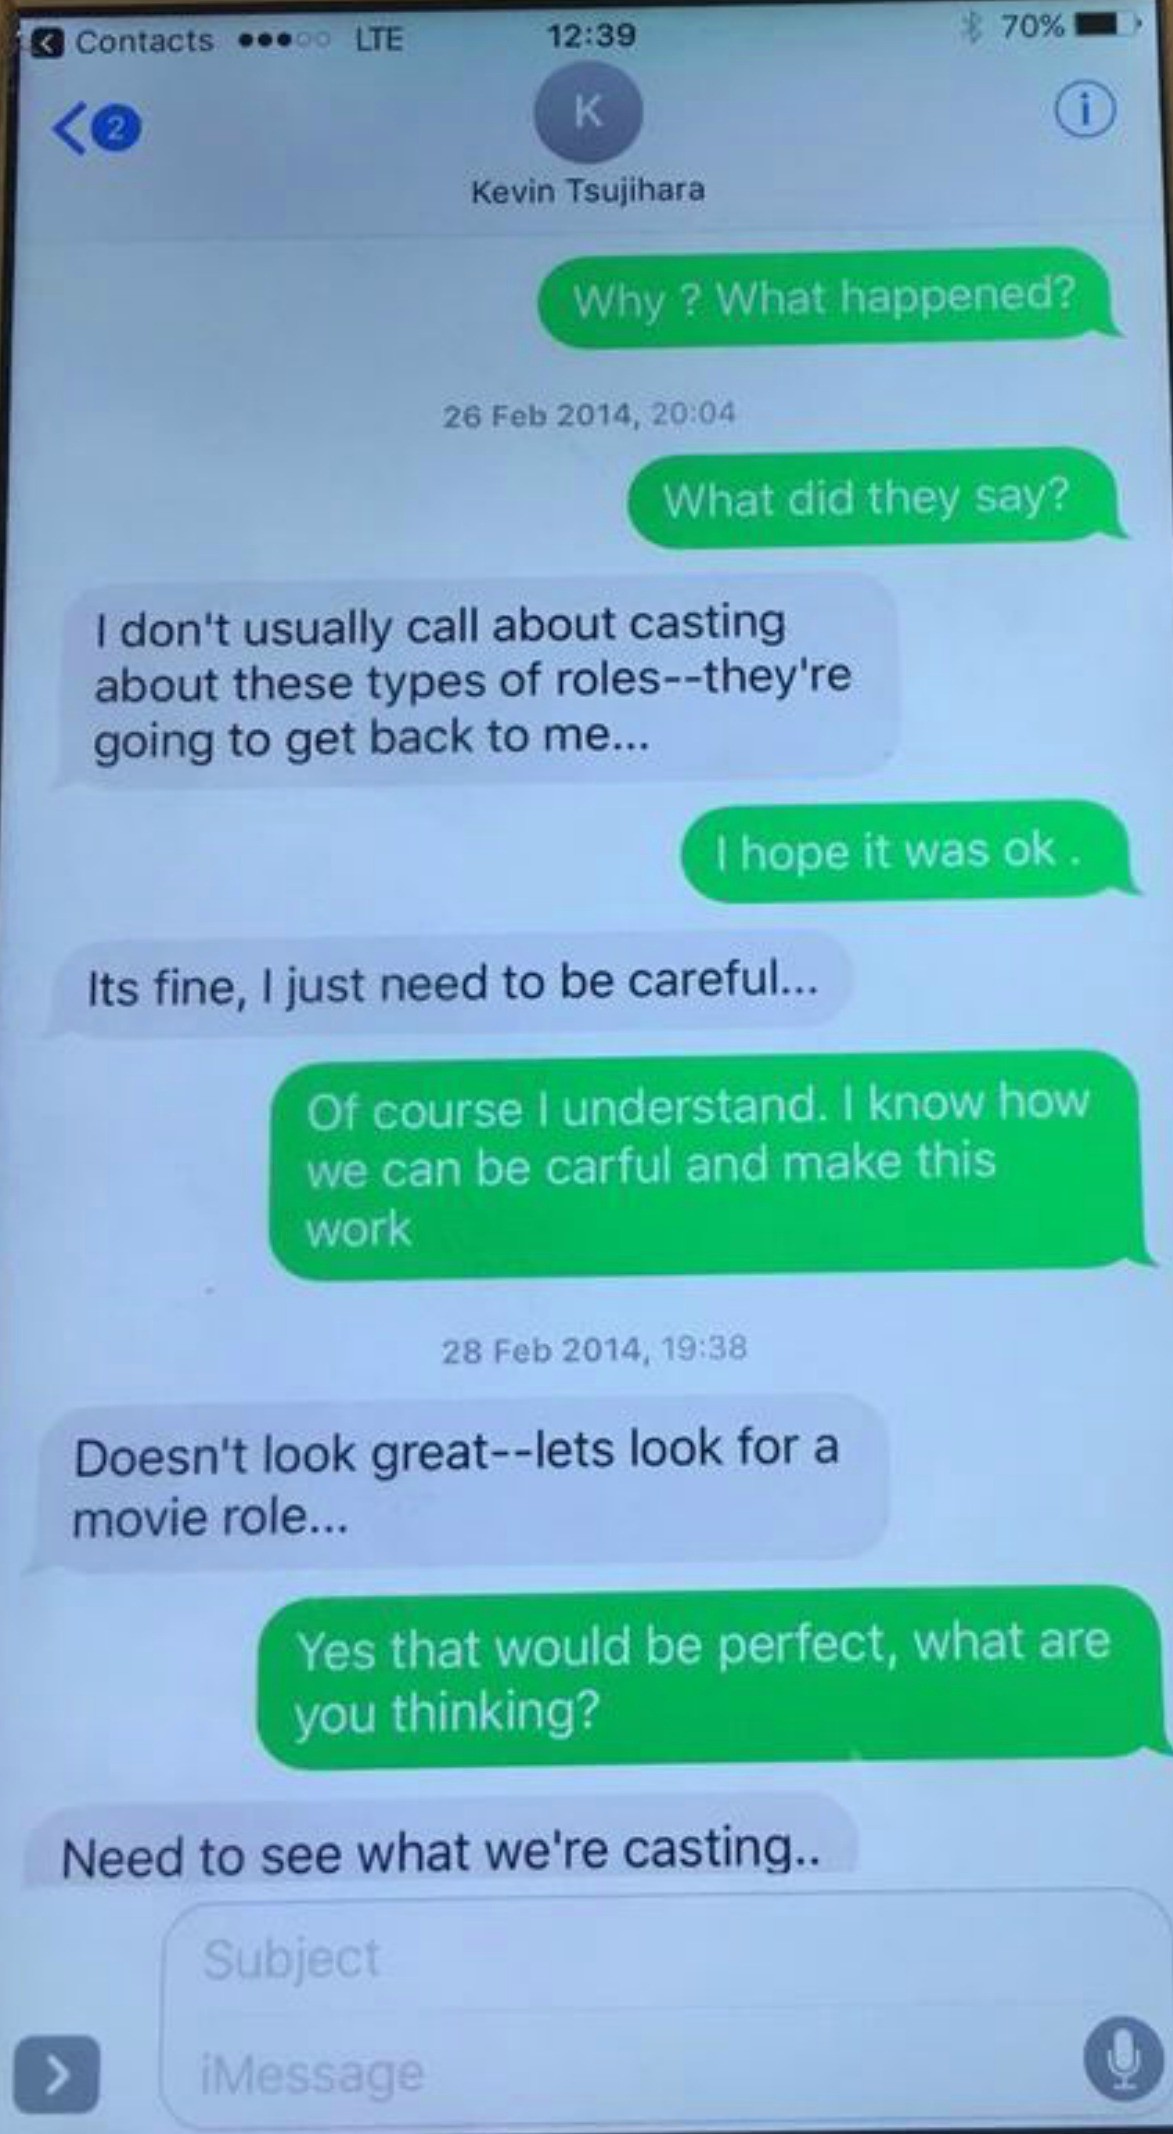 Uma das trocas de mensagens entre a atriz Charlotte Kirk e o empresário Kevin Tsujihara falando sobre possibilidades de oportunidades em filmes após os dois manterem um relacionamento secreto (Foto: Reprodução)